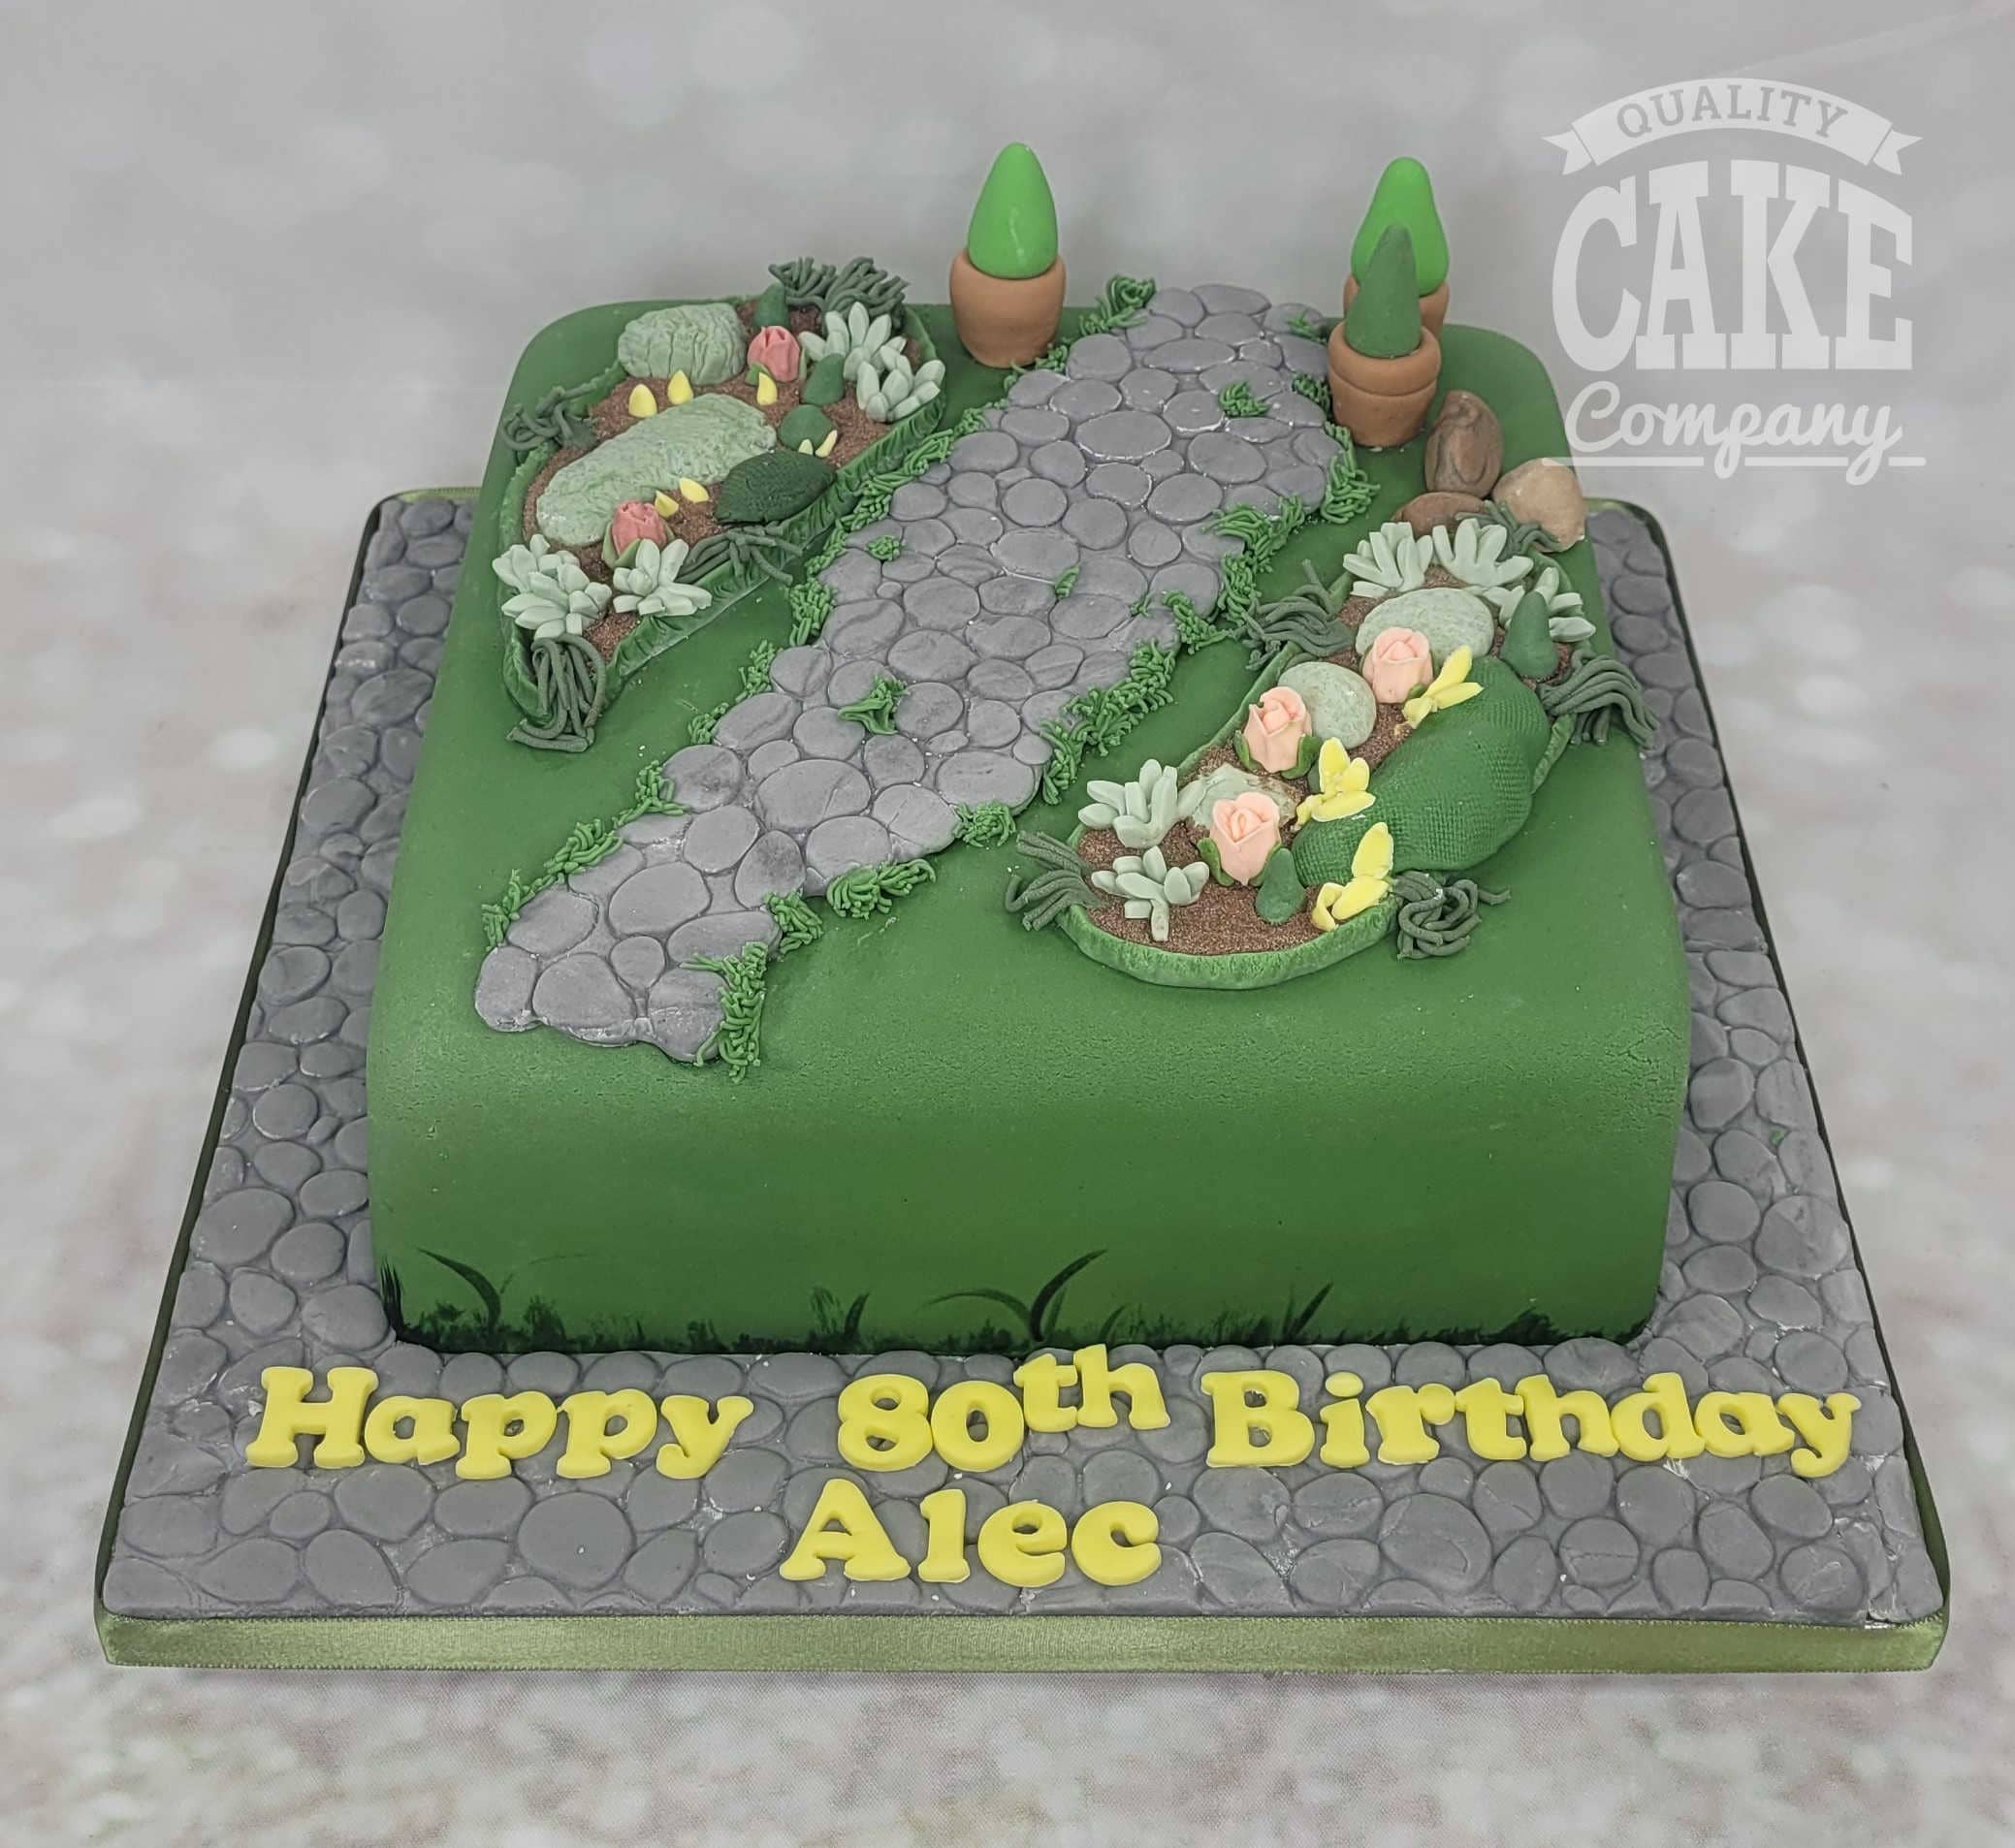 Customised Blueberry Cake | Cake decorating designs, Homemade birthday cakes,  Blueberry cake